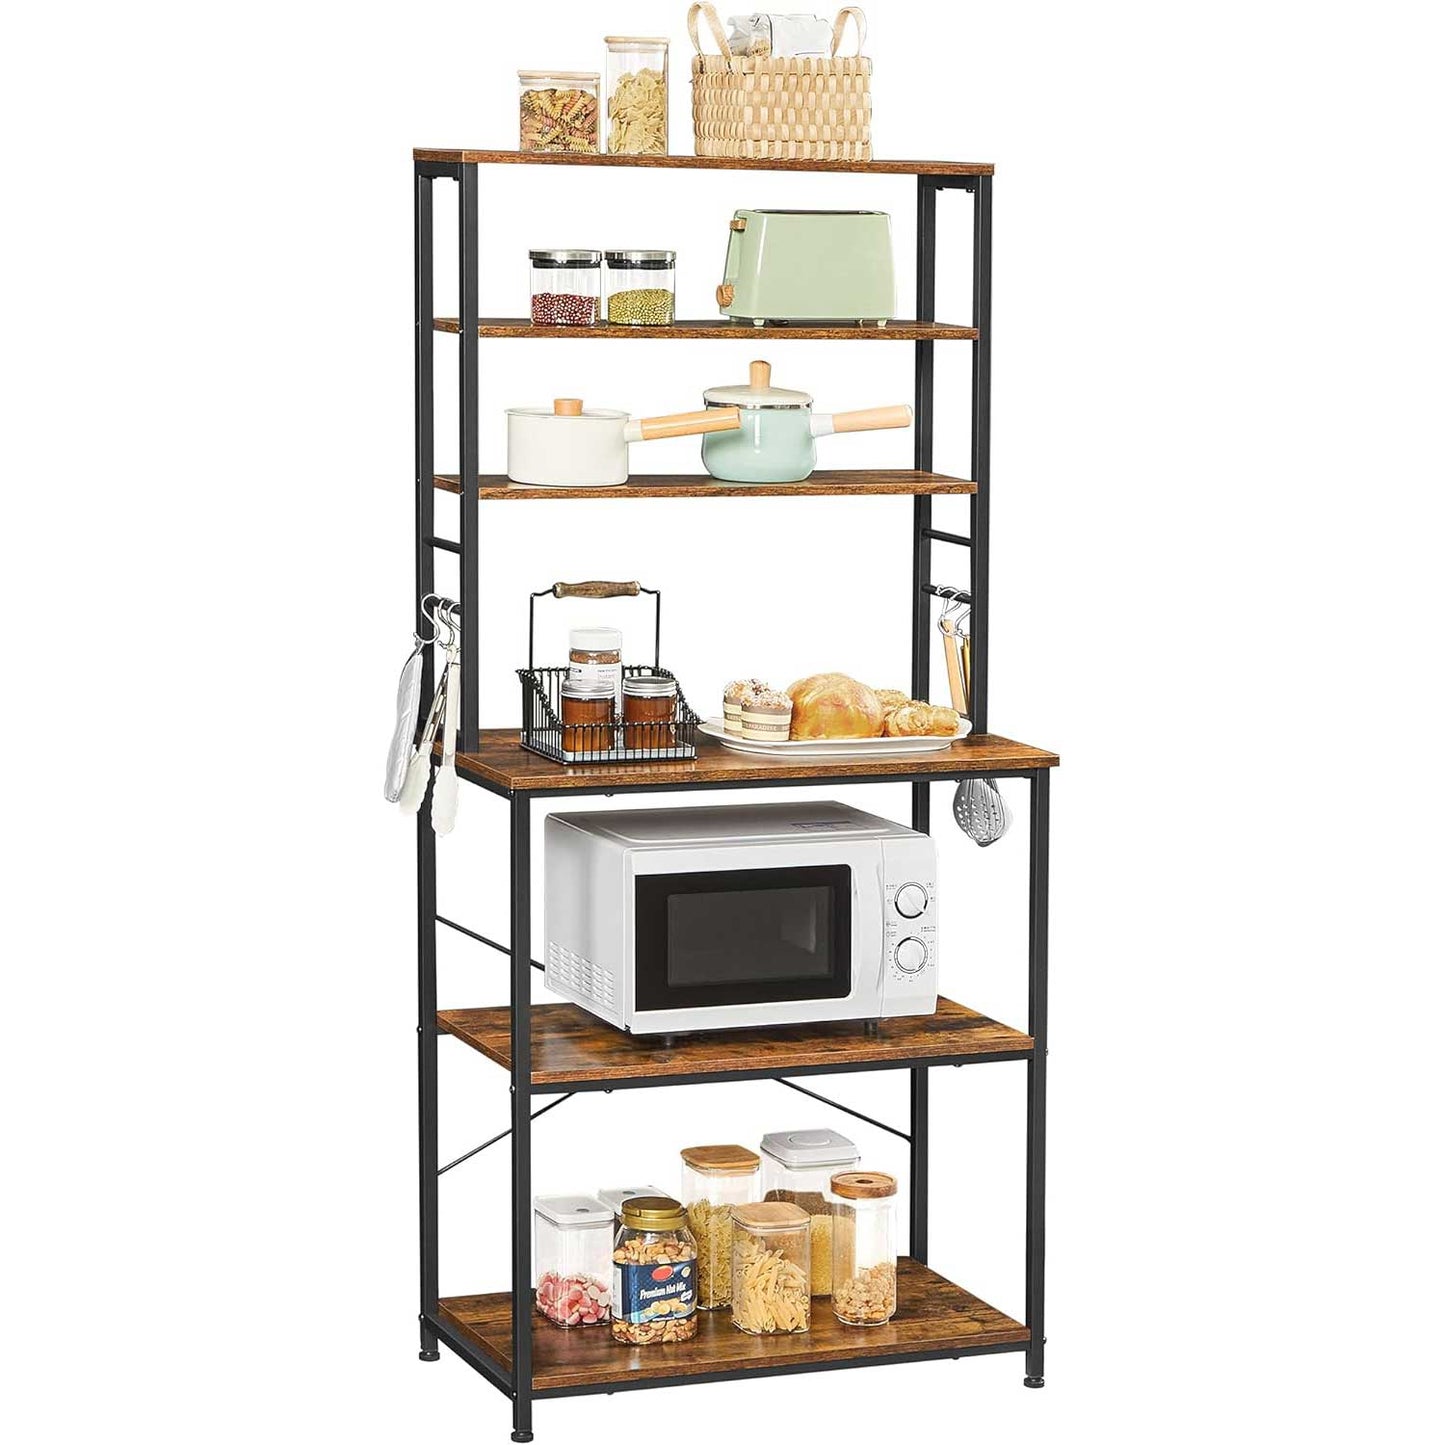 estanteria para cocina, estanteria cocina, soporte microondas, estanteria de cocina, muebles auxiliares de cocina, Vasagle estanteria